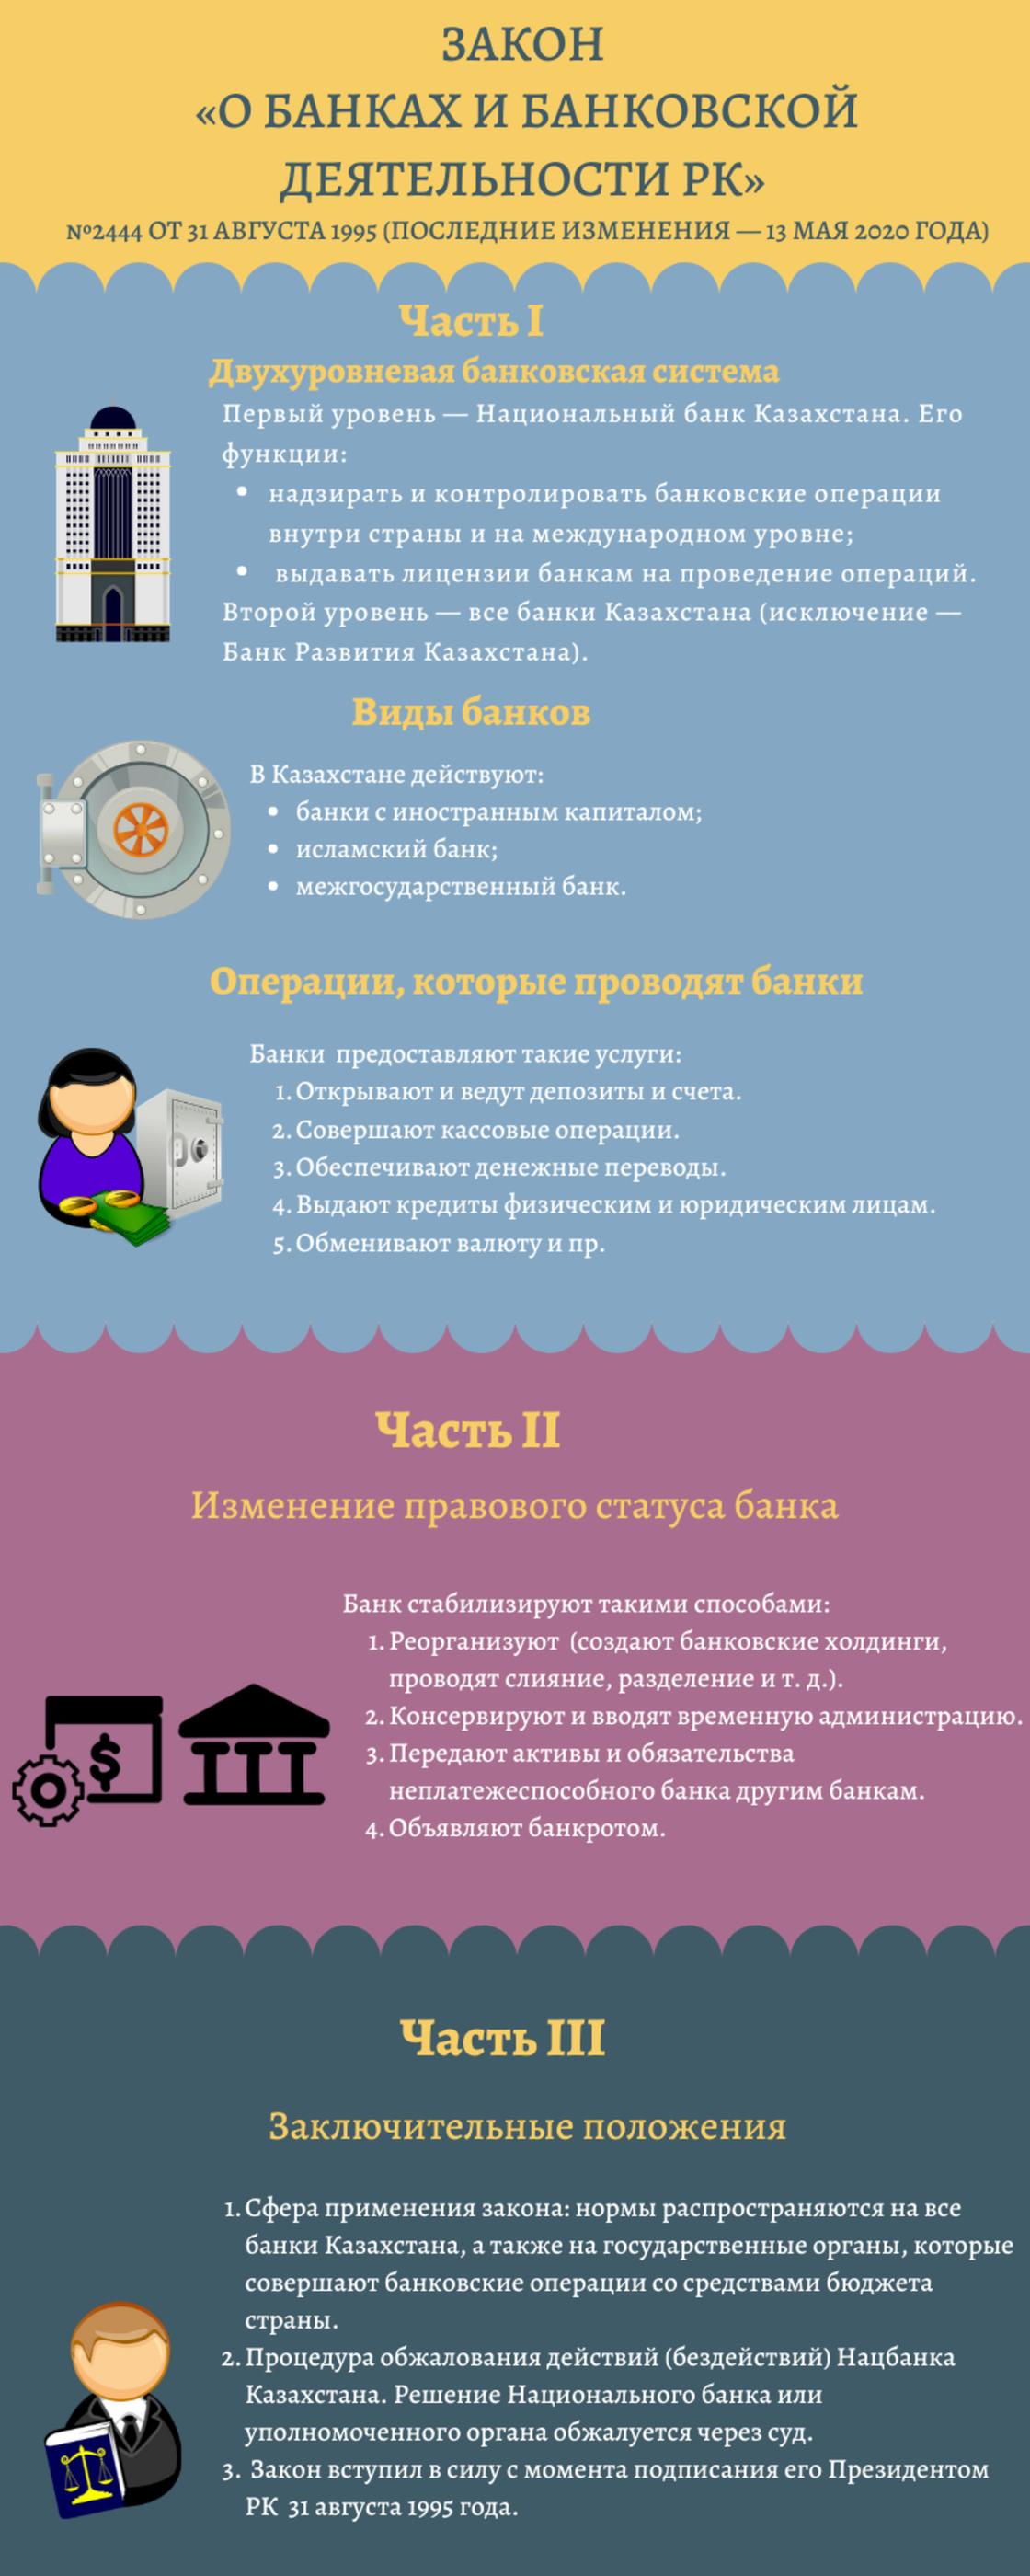 Закон «О банках и банковской деятельности в Республике Казахстан»: пояснения